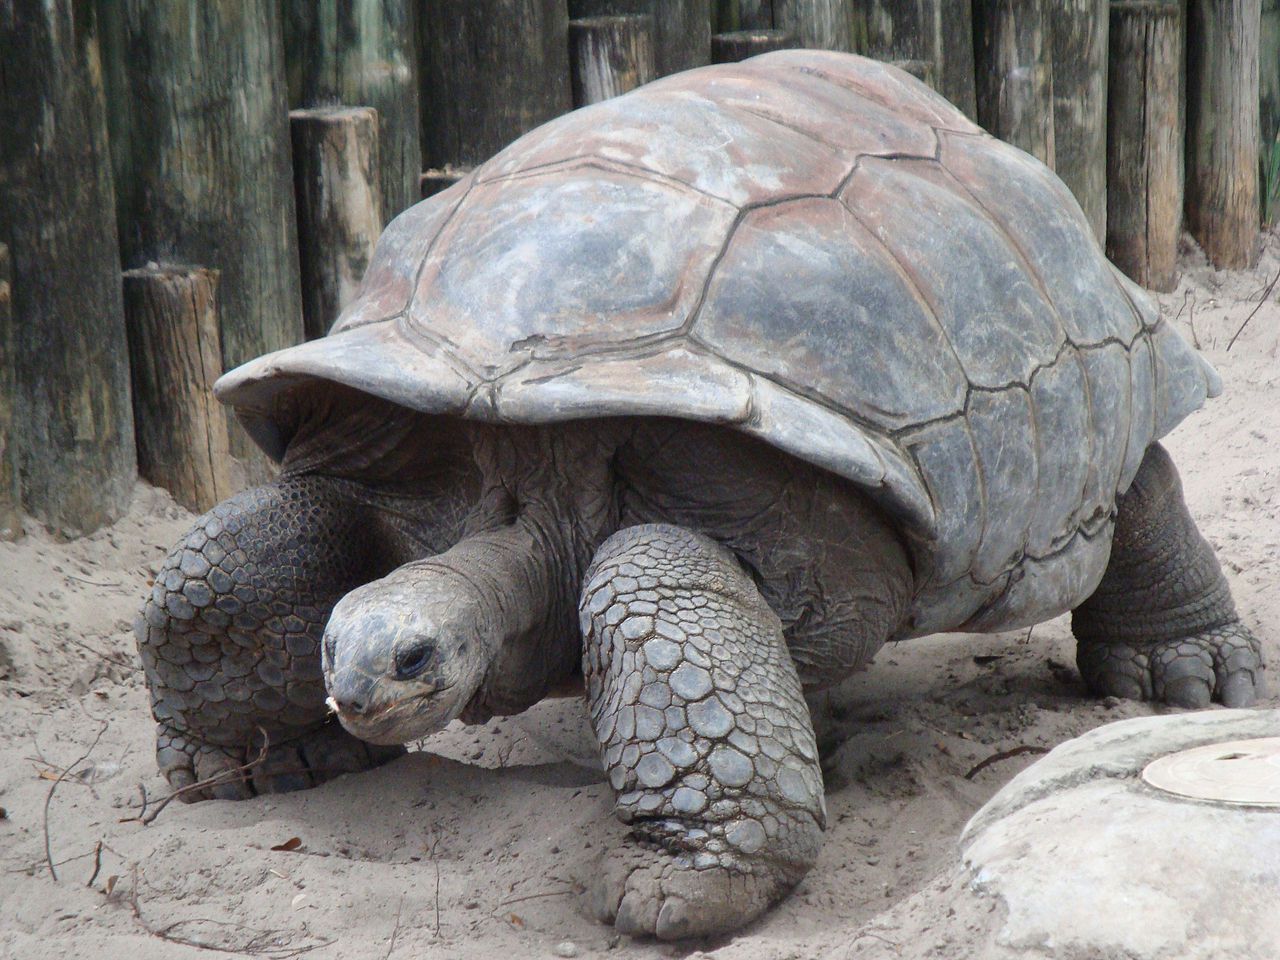 Une tortue géante échappée d'un zoo il y a deux semaines retrouvée... à 140 m de là